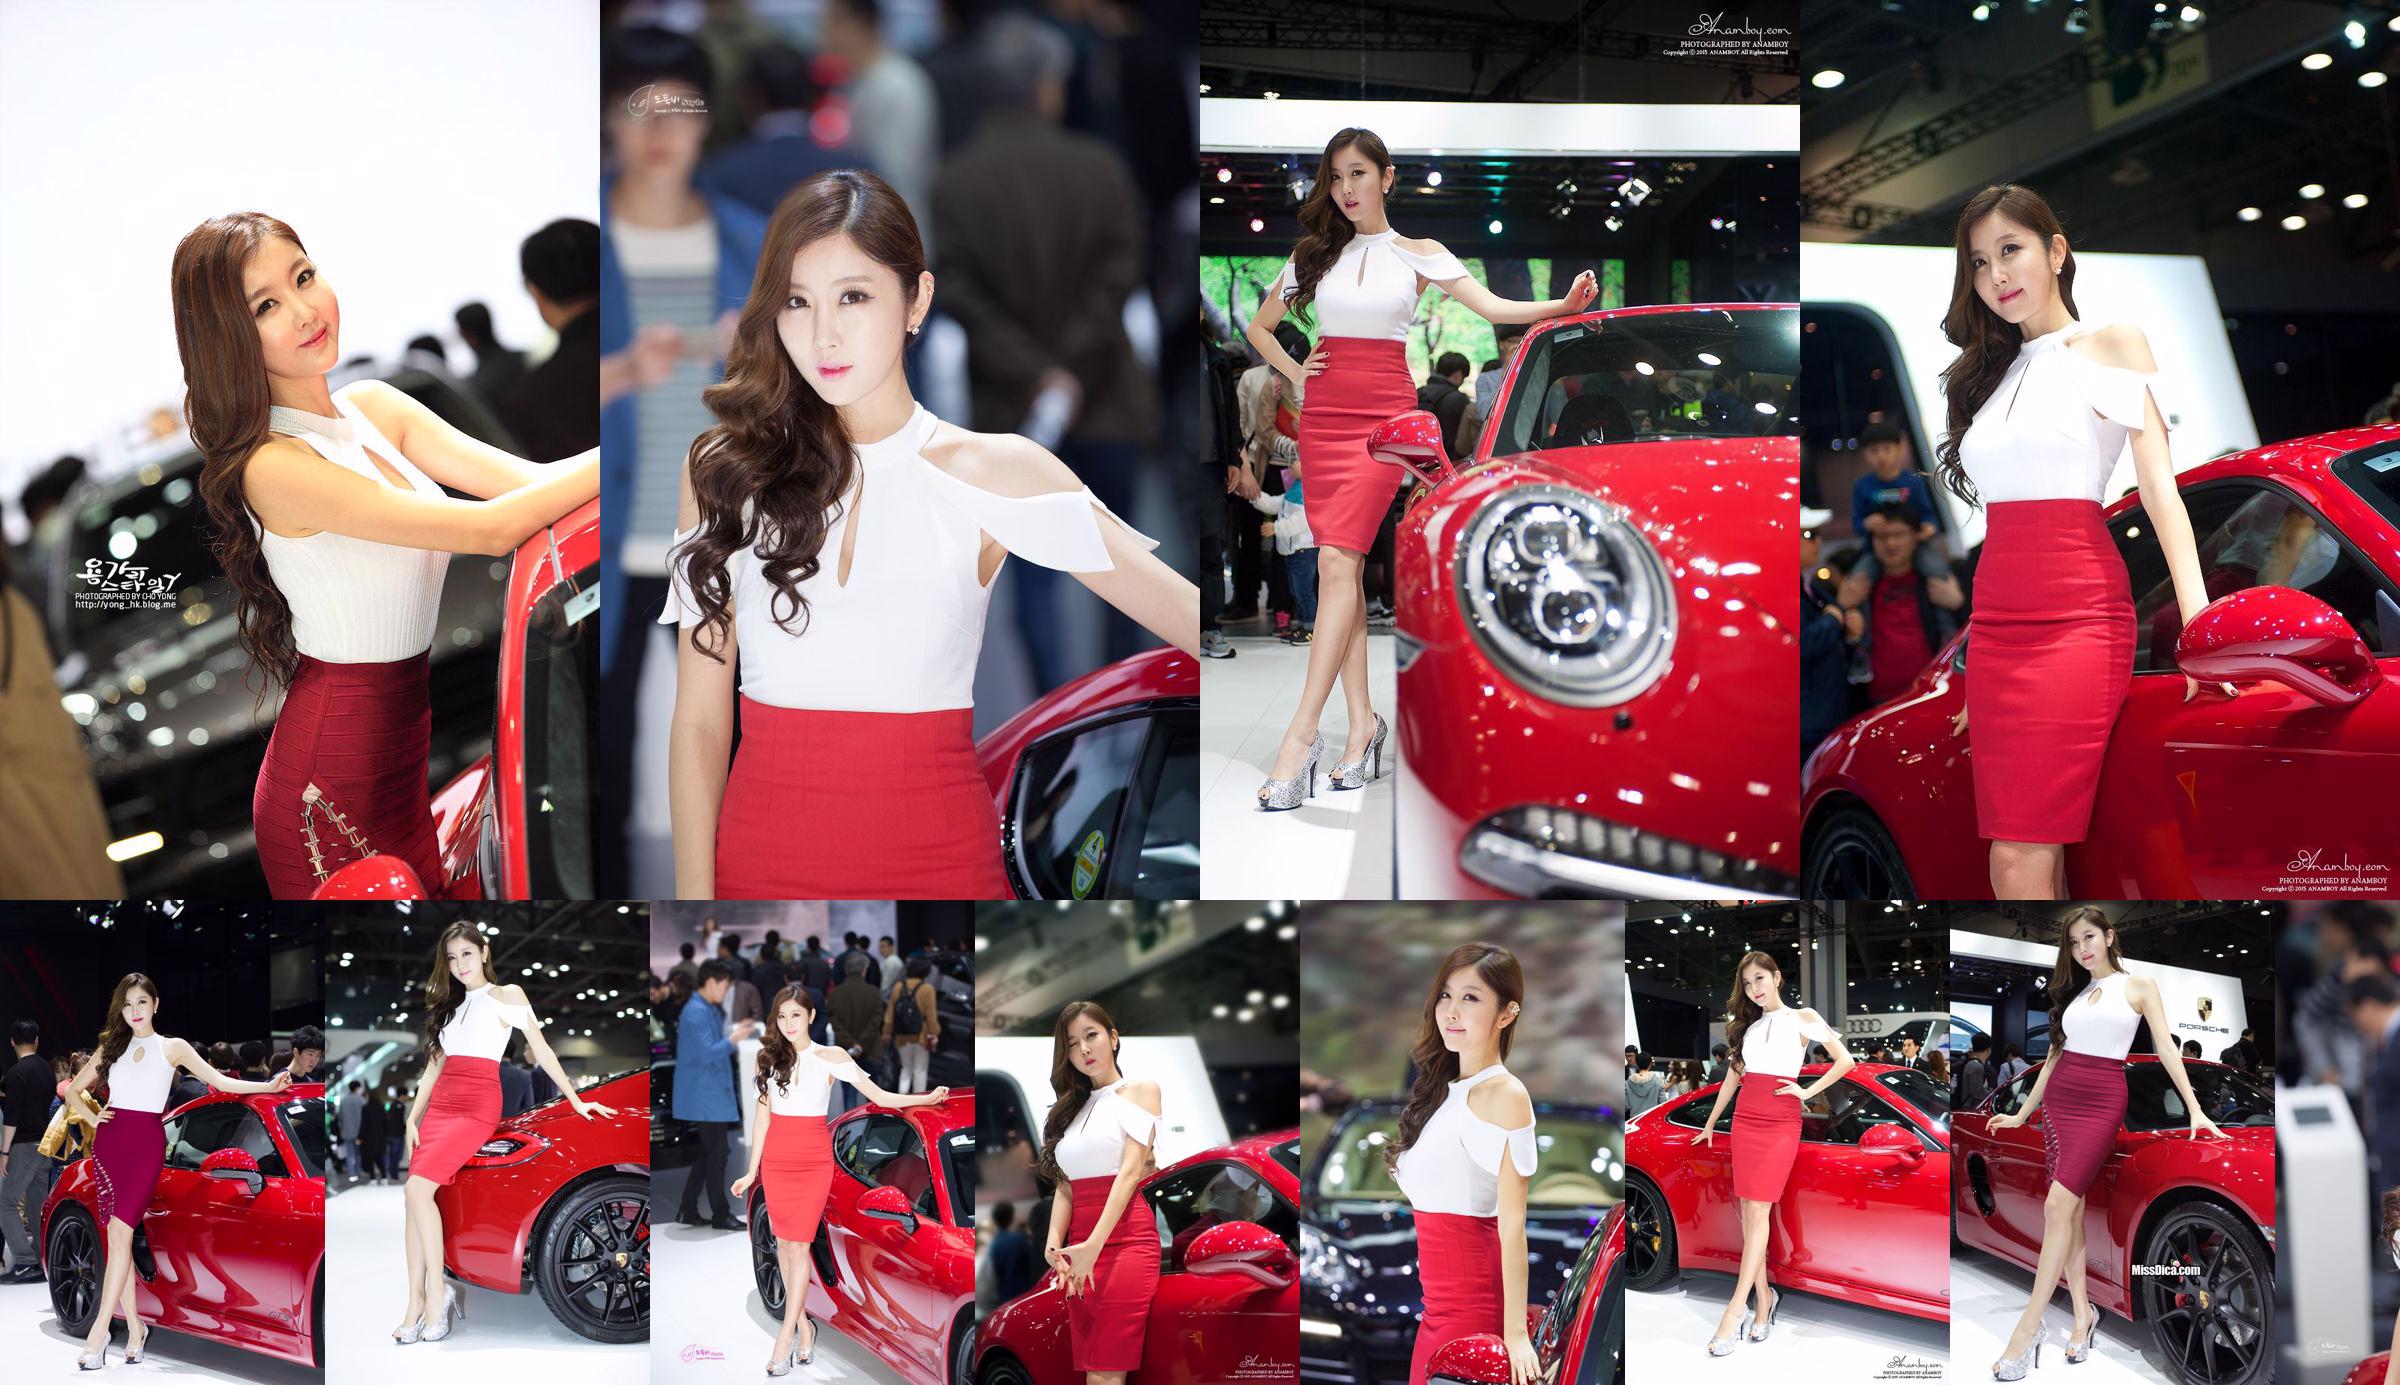 รวมภาพรถเกาหลีรุ่น Cui Xingya / "Red Skirt Series ของ Cui Xinger ที่งานออโต้โชว์" No.5aea96 หน้า 7